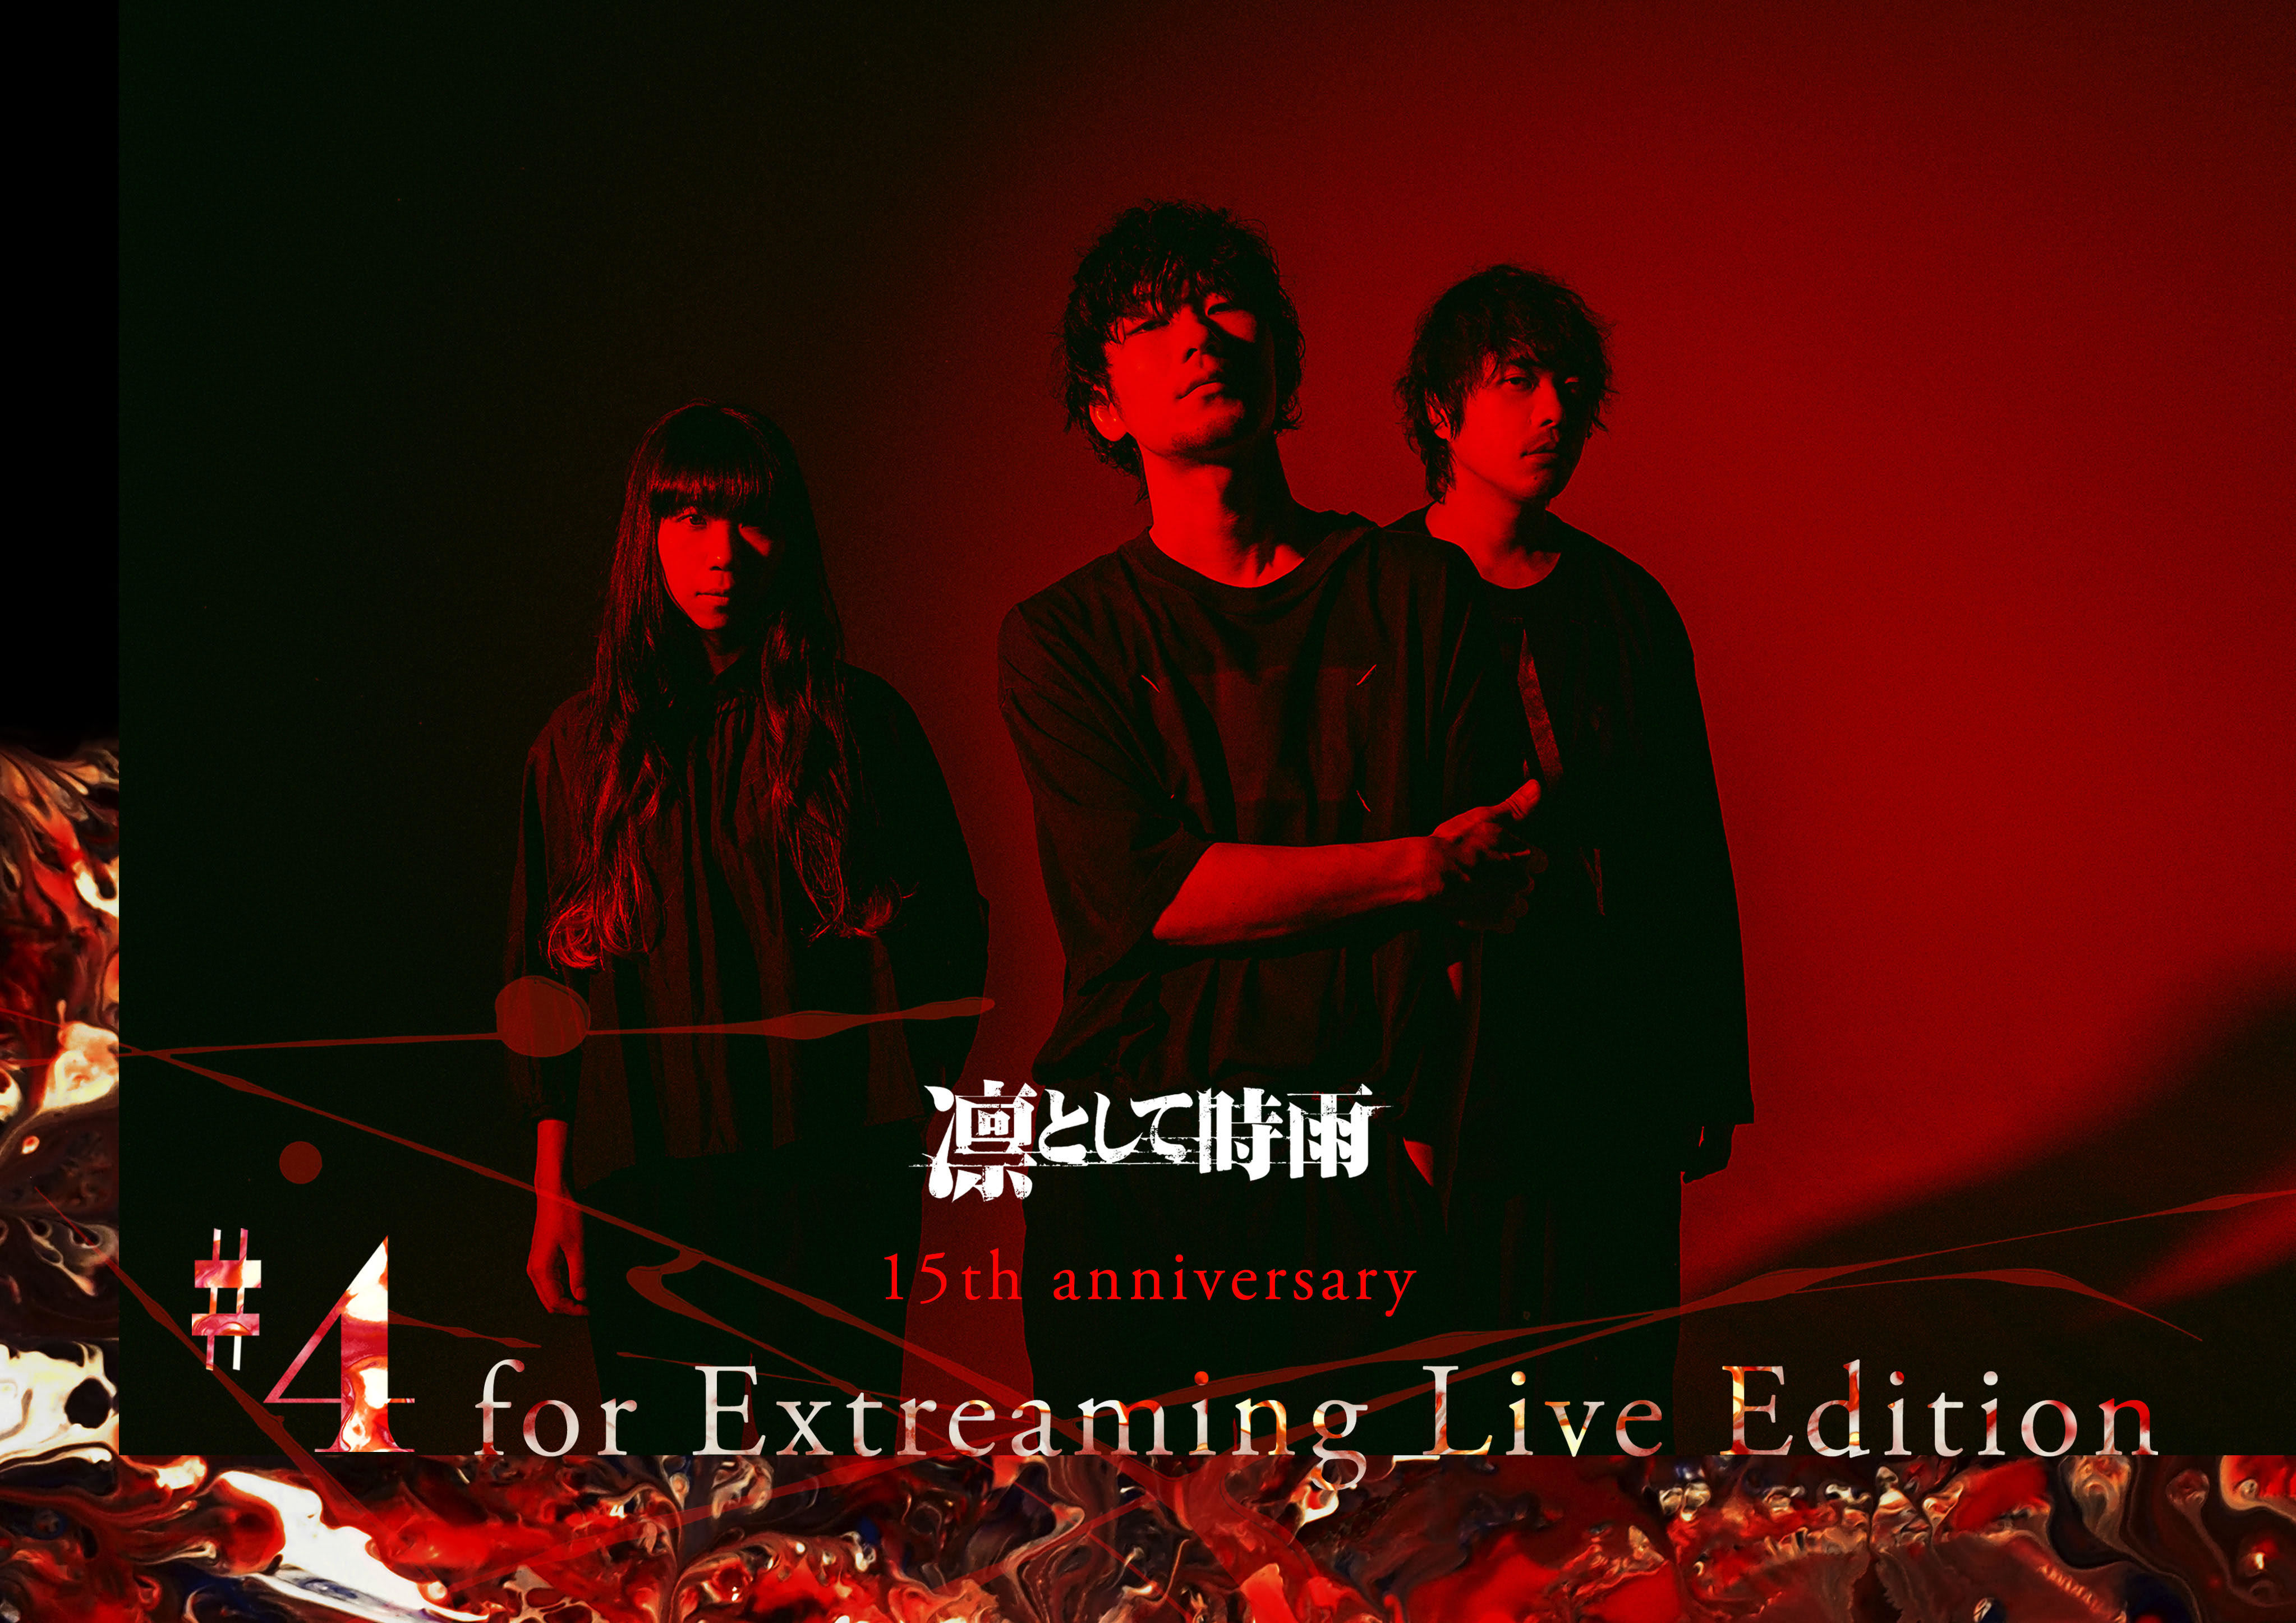 『凛として時雨 15th anniversary #4 for Extreaming Live Edition』ビジュアル